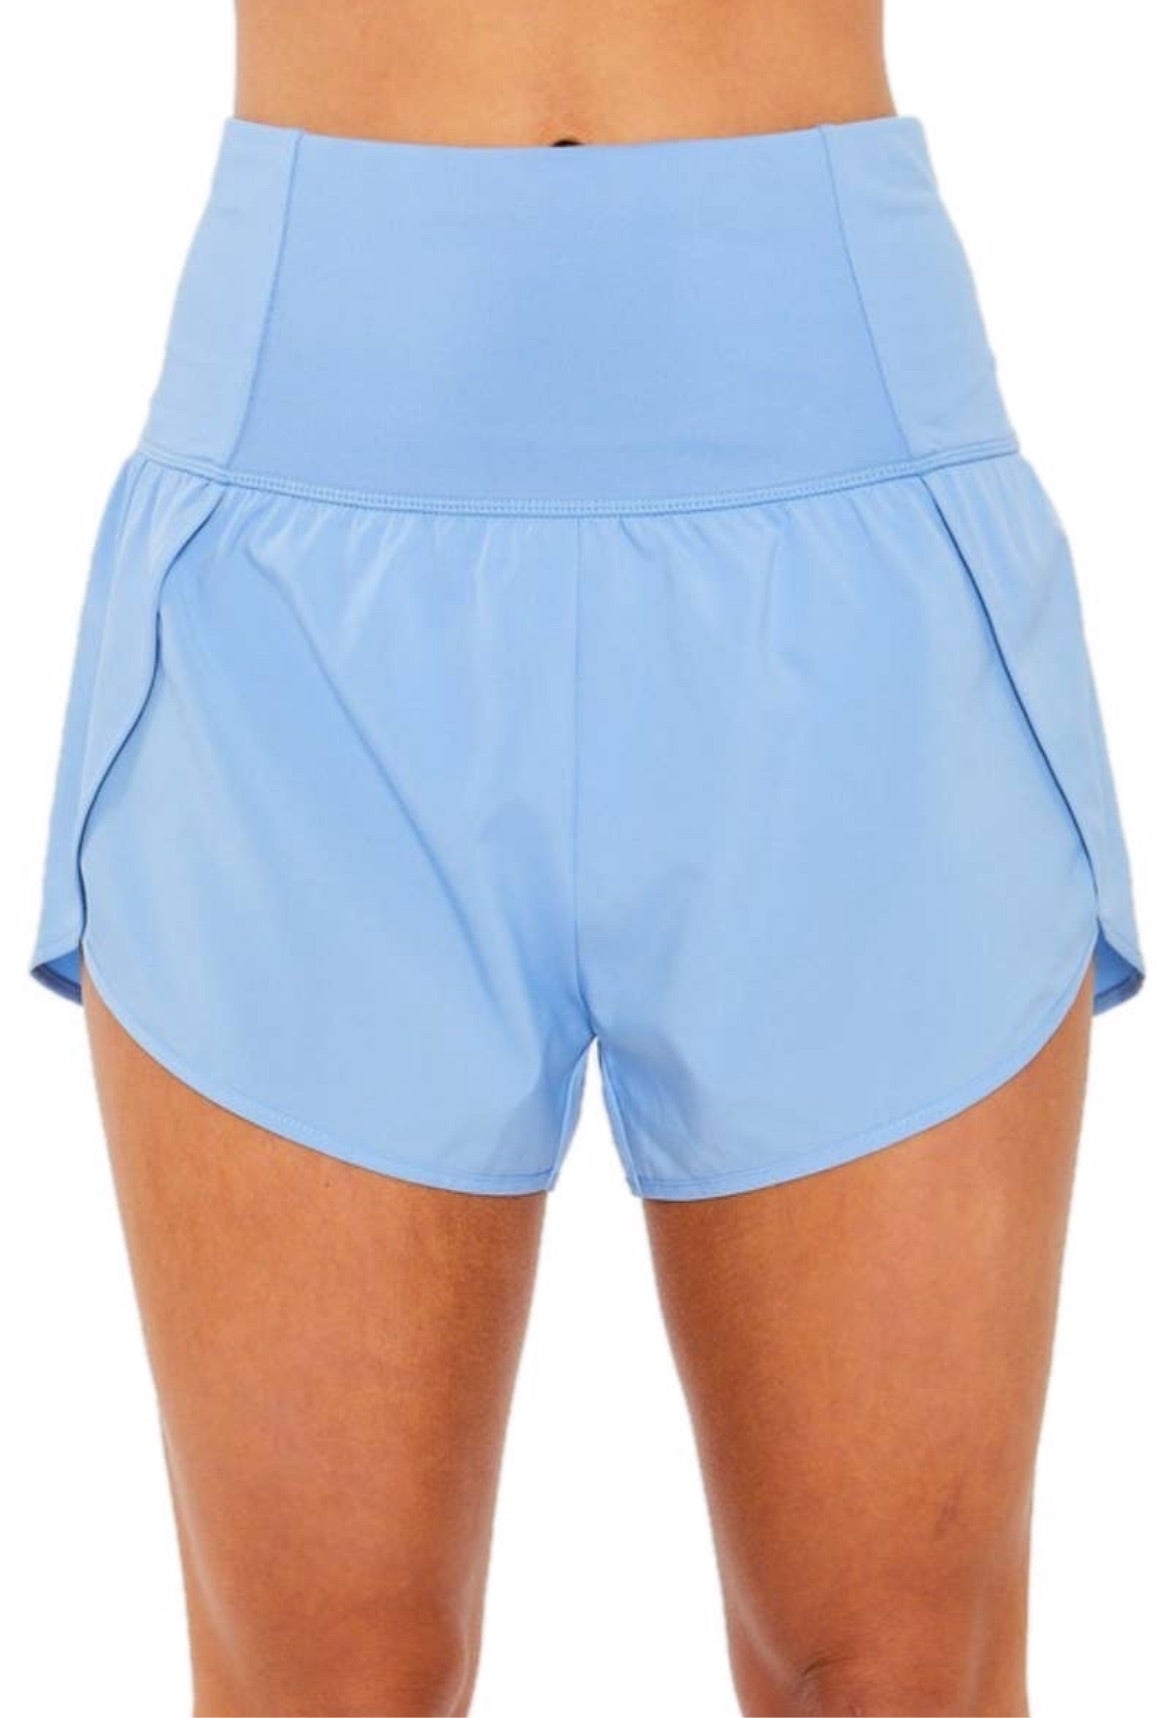 Sky blue workout shorts